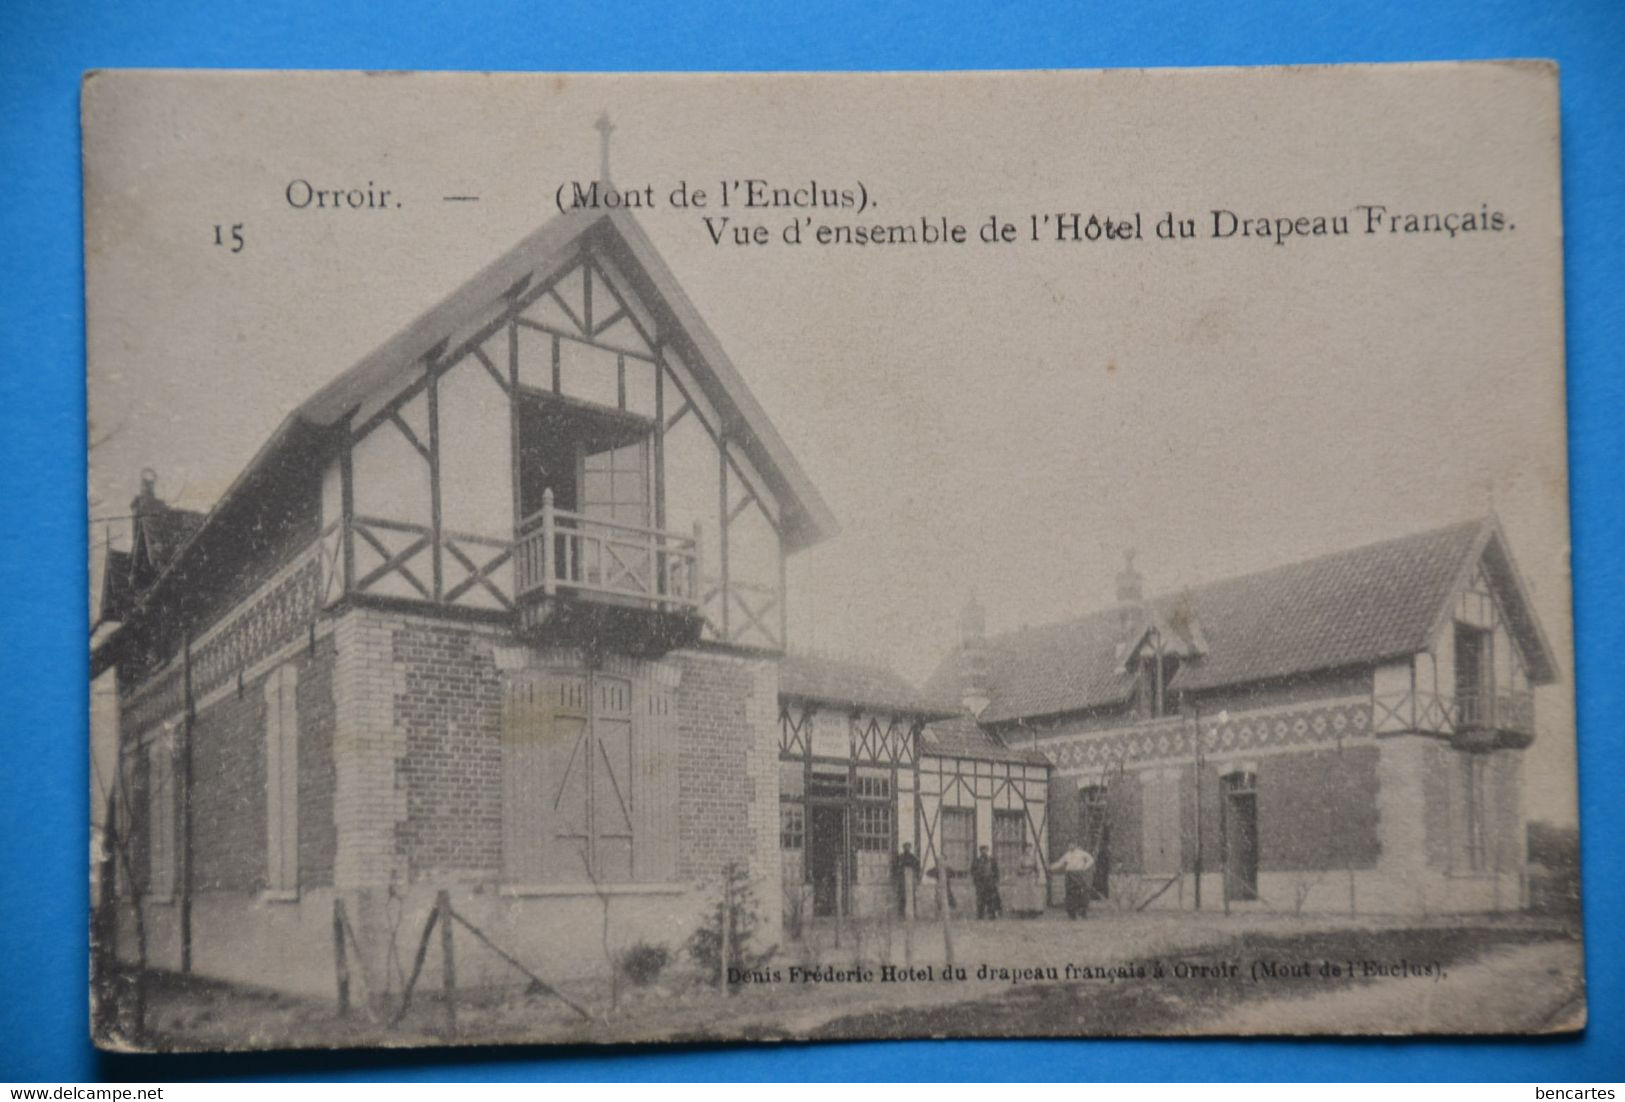 Orroir 1930: Mont De L'Enclus, Vue De L'ensemble Dce L'Hôtel Du Drapeau Français - Mont-de-l'Enclus